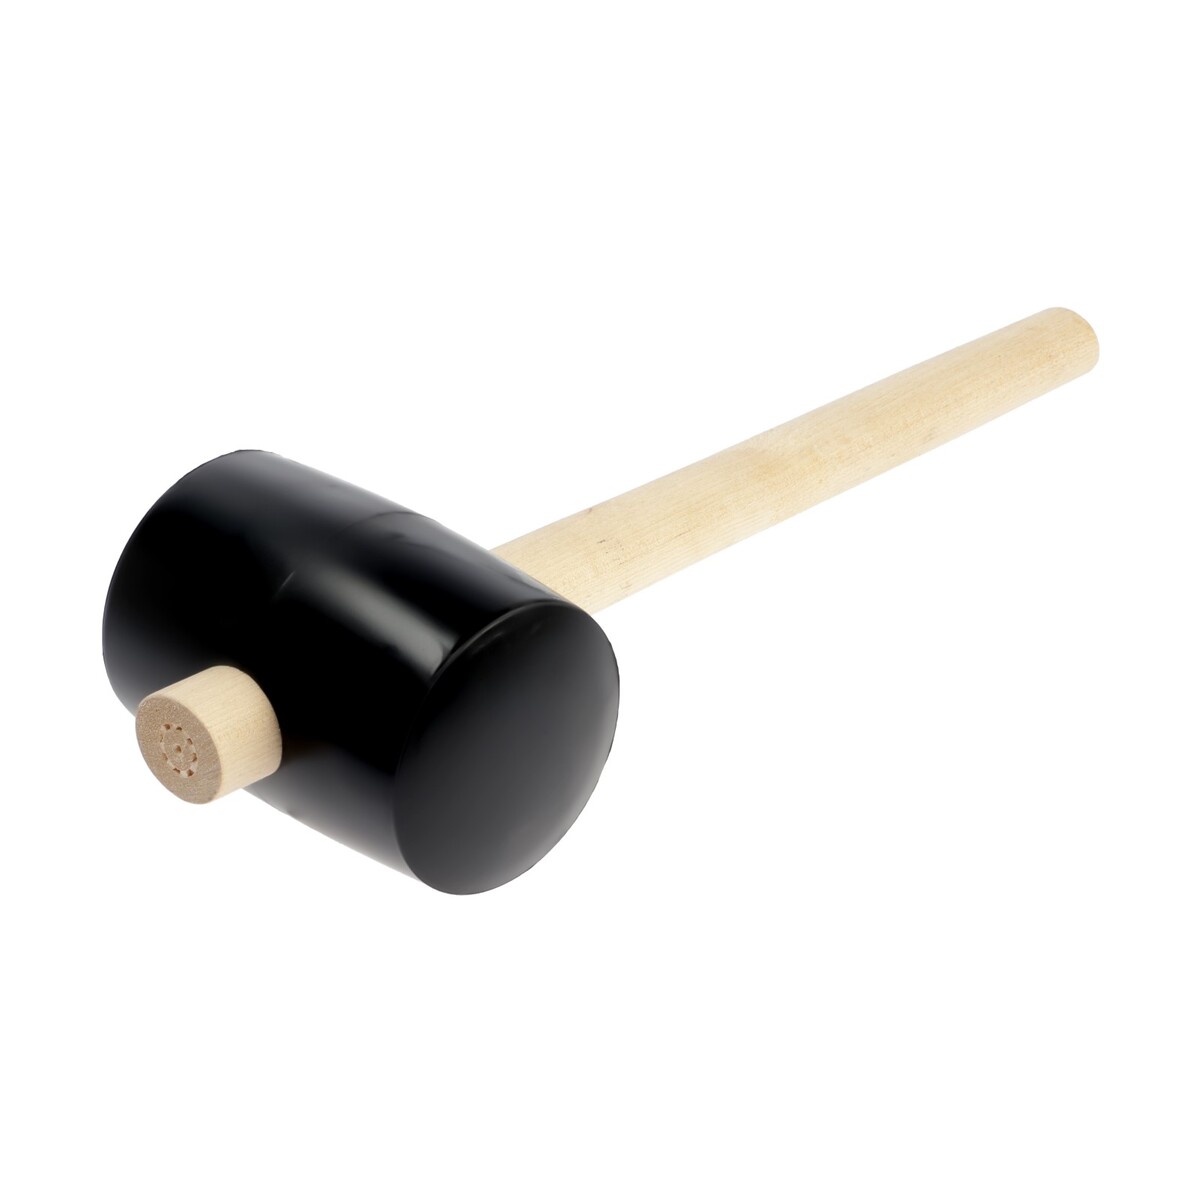 Киянка лом, деревянная рукоятка, черная резина, 90 мм, 1000 г киянка лом деревянная рукоятка черная резина 45 мм 200 г